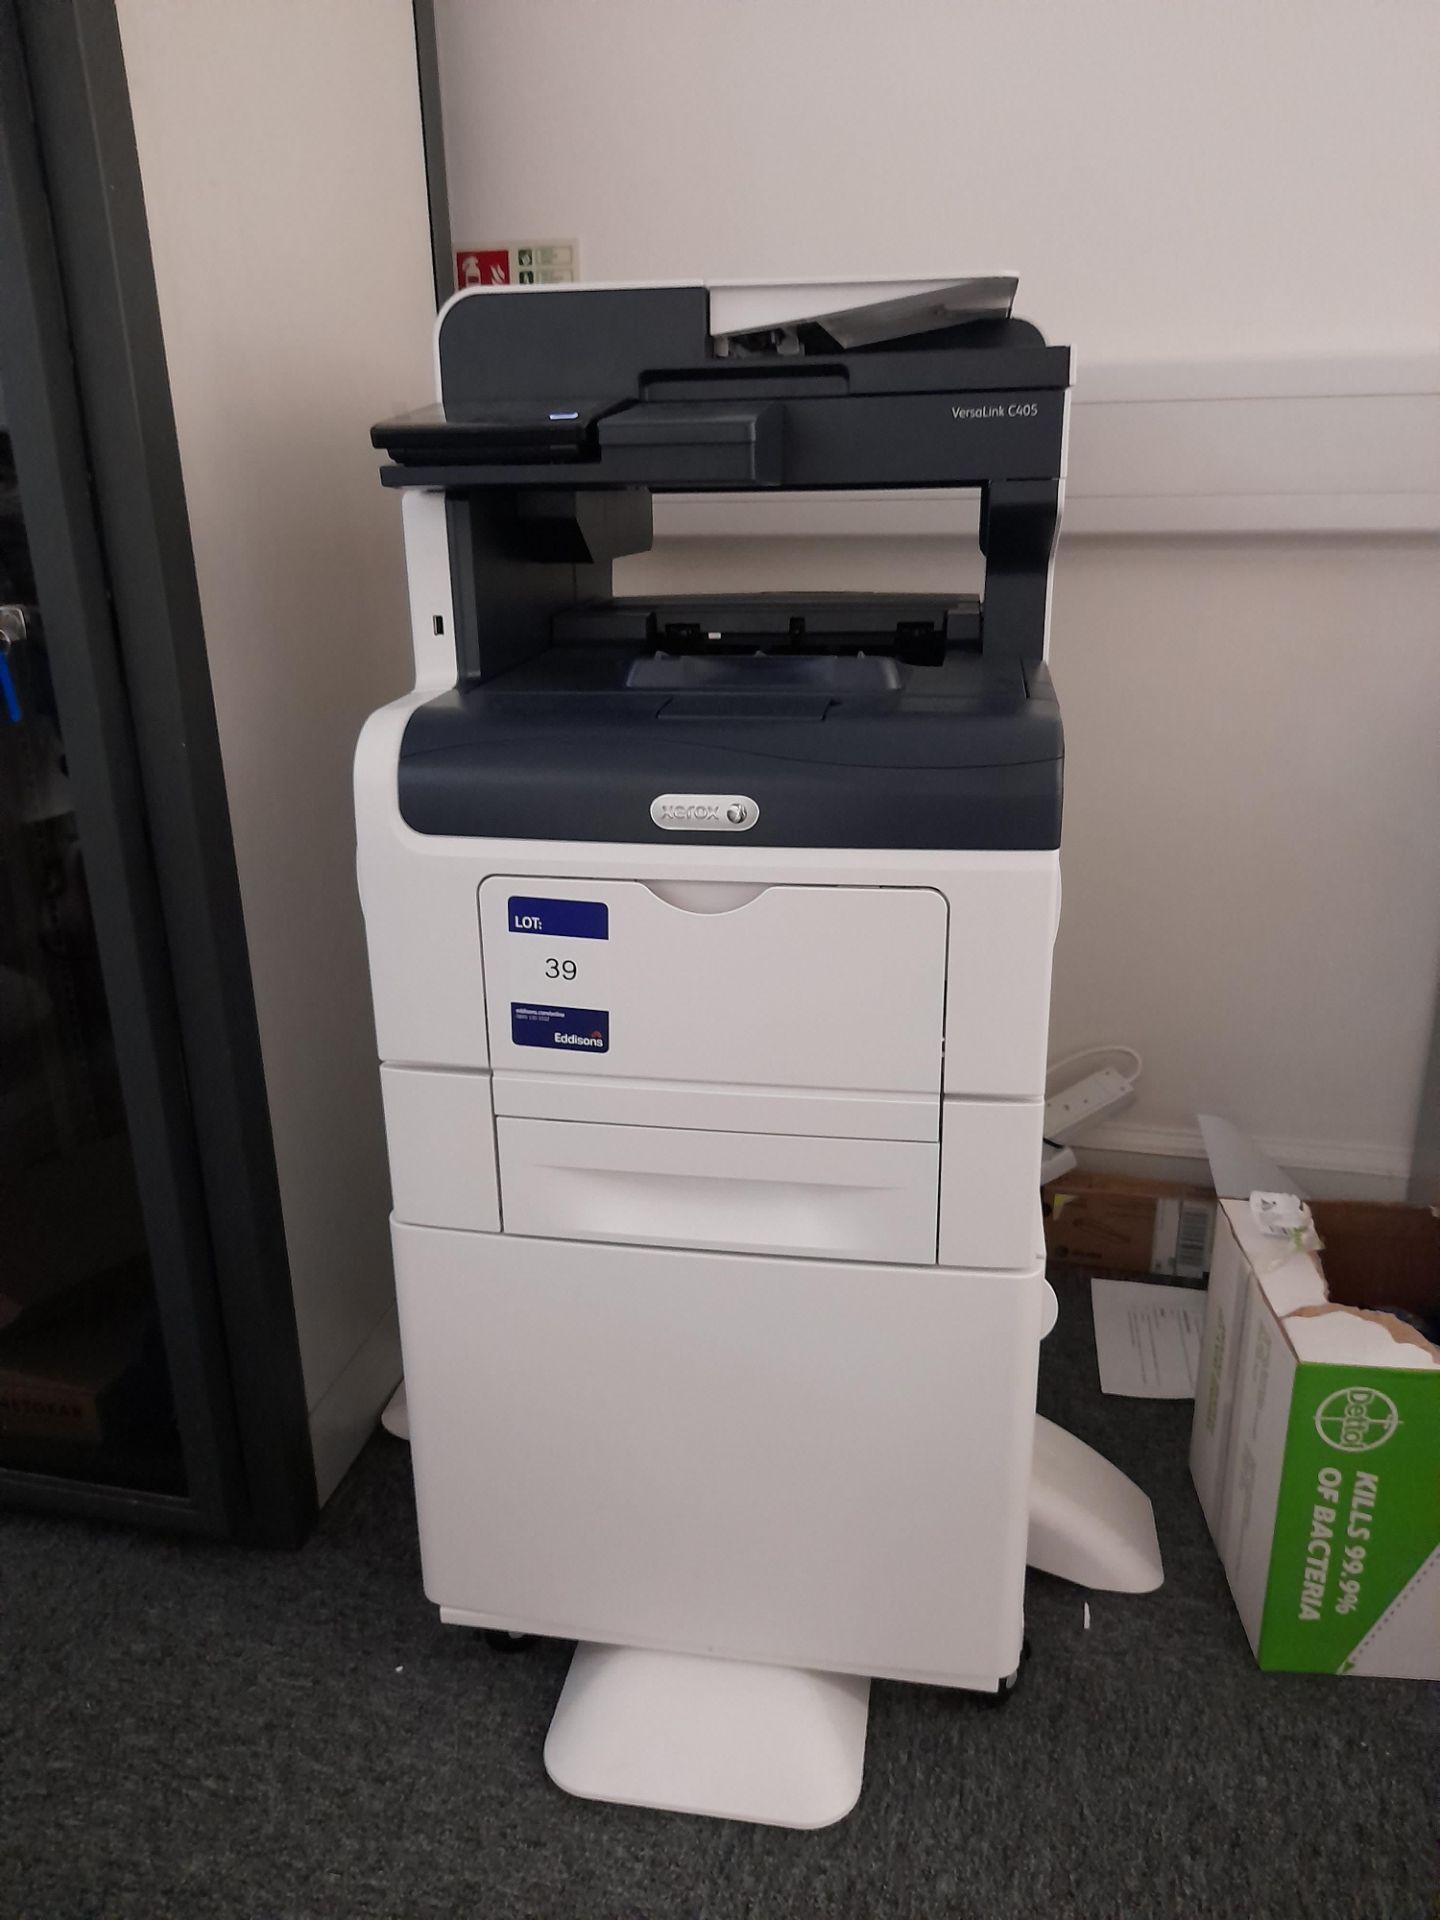 Xerox Versalink C405 printer/copier/scanner, s/n 3